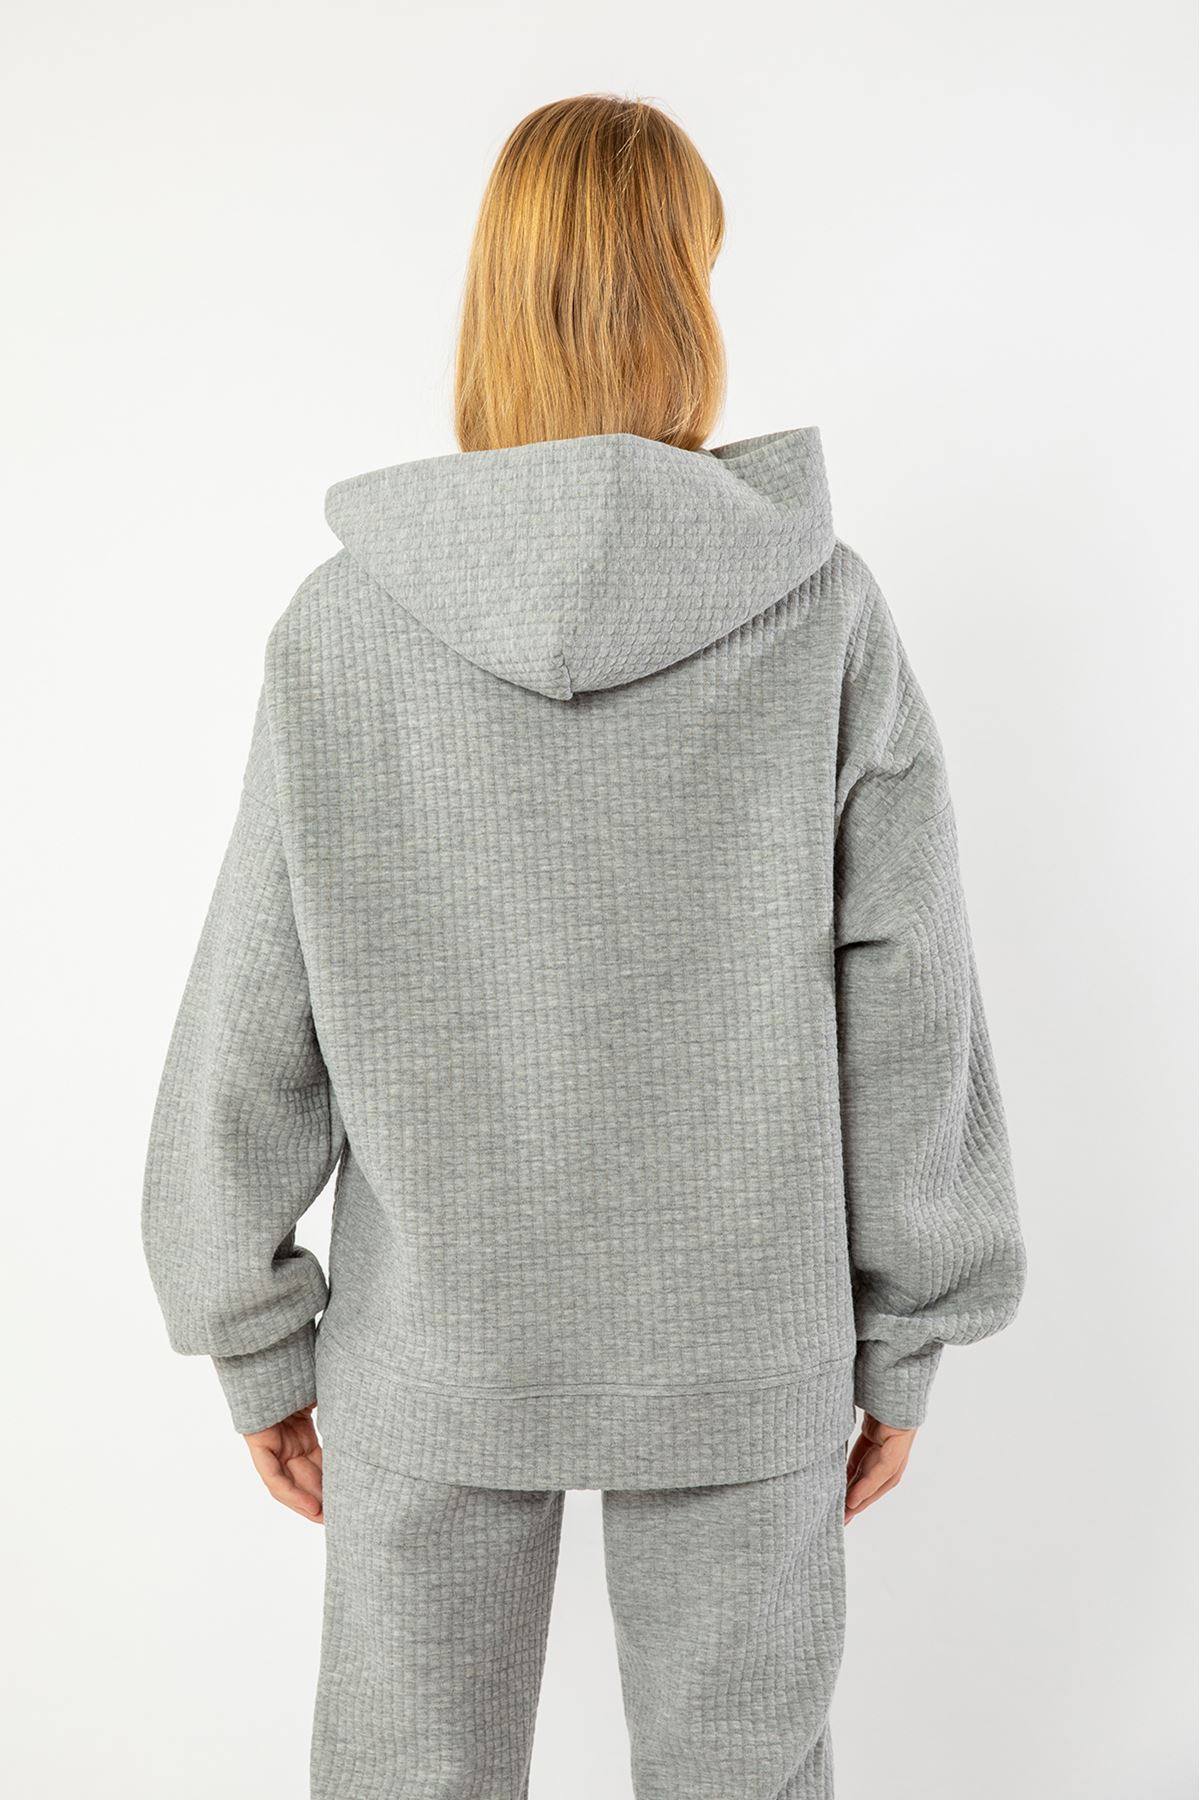 Quilted Fabric Hooded Hip Height Oversize Zip Detailed Women Sweatshirt - Grey